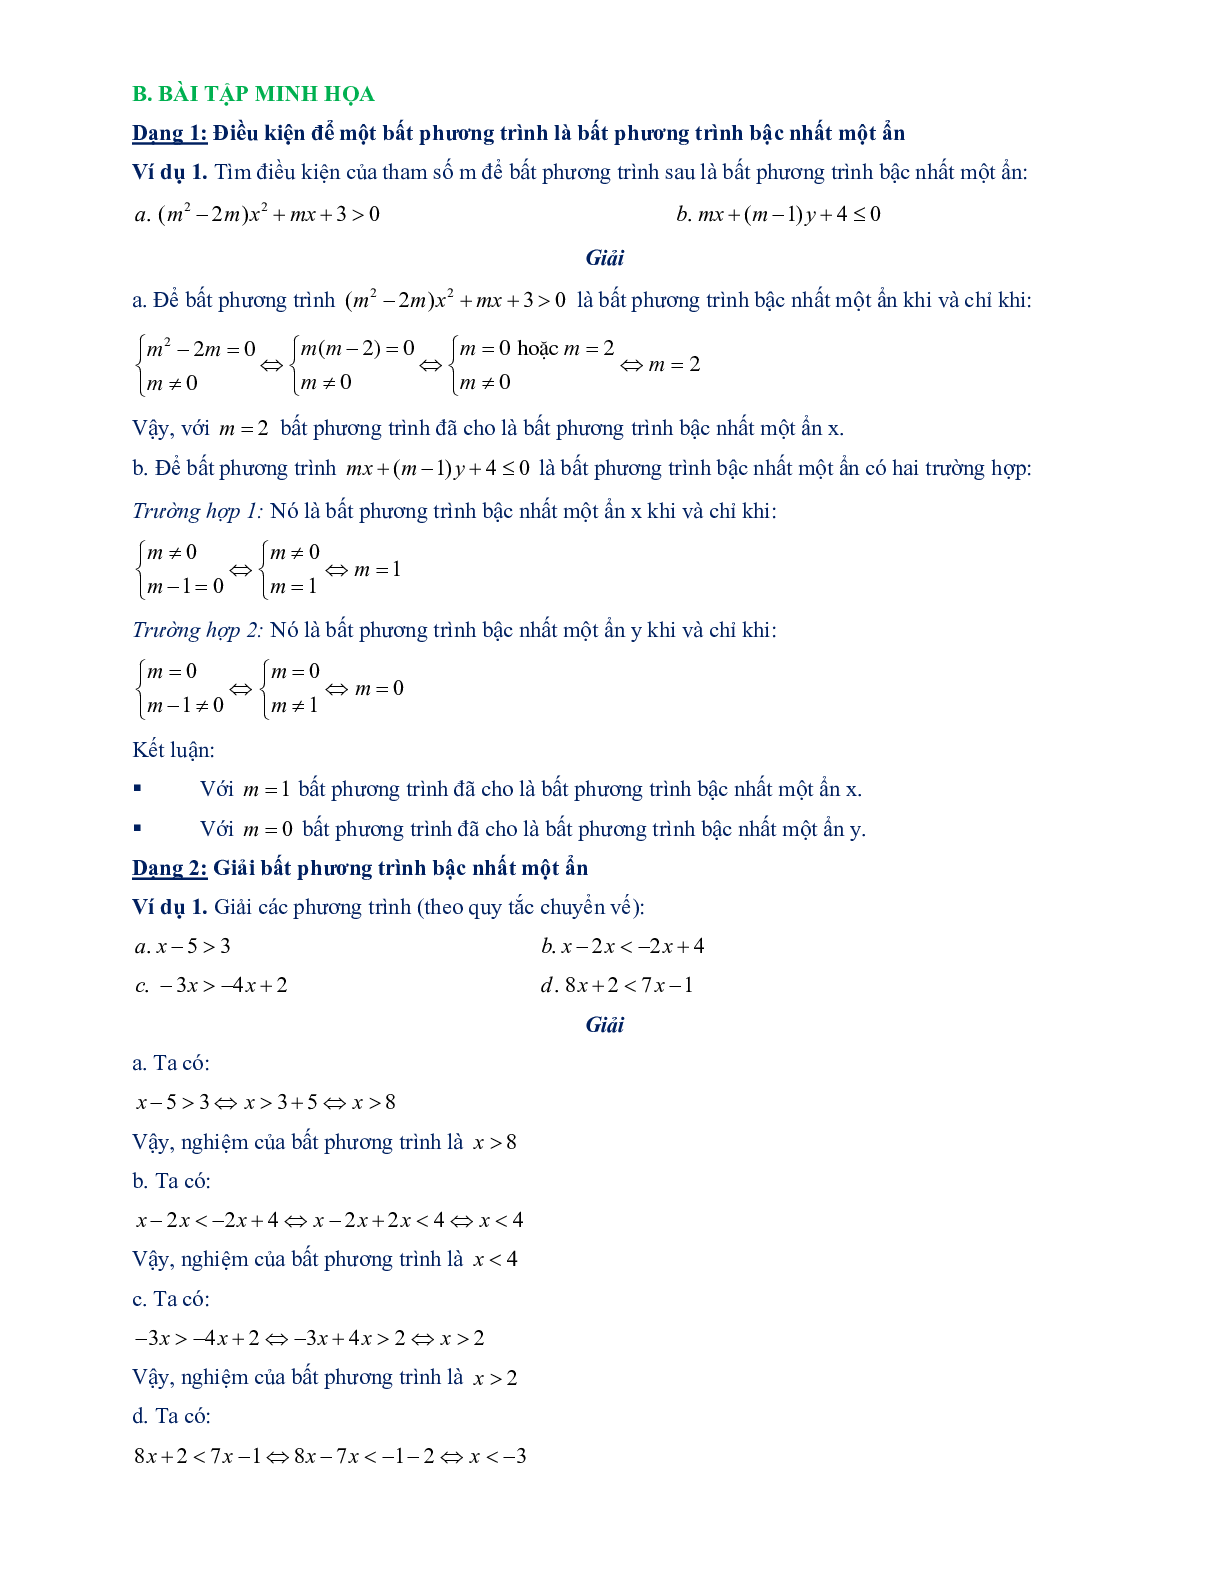 Chuyên đề bất phương trình bậc nhất một ẩn 2023 - Toán 8 (trang 4)